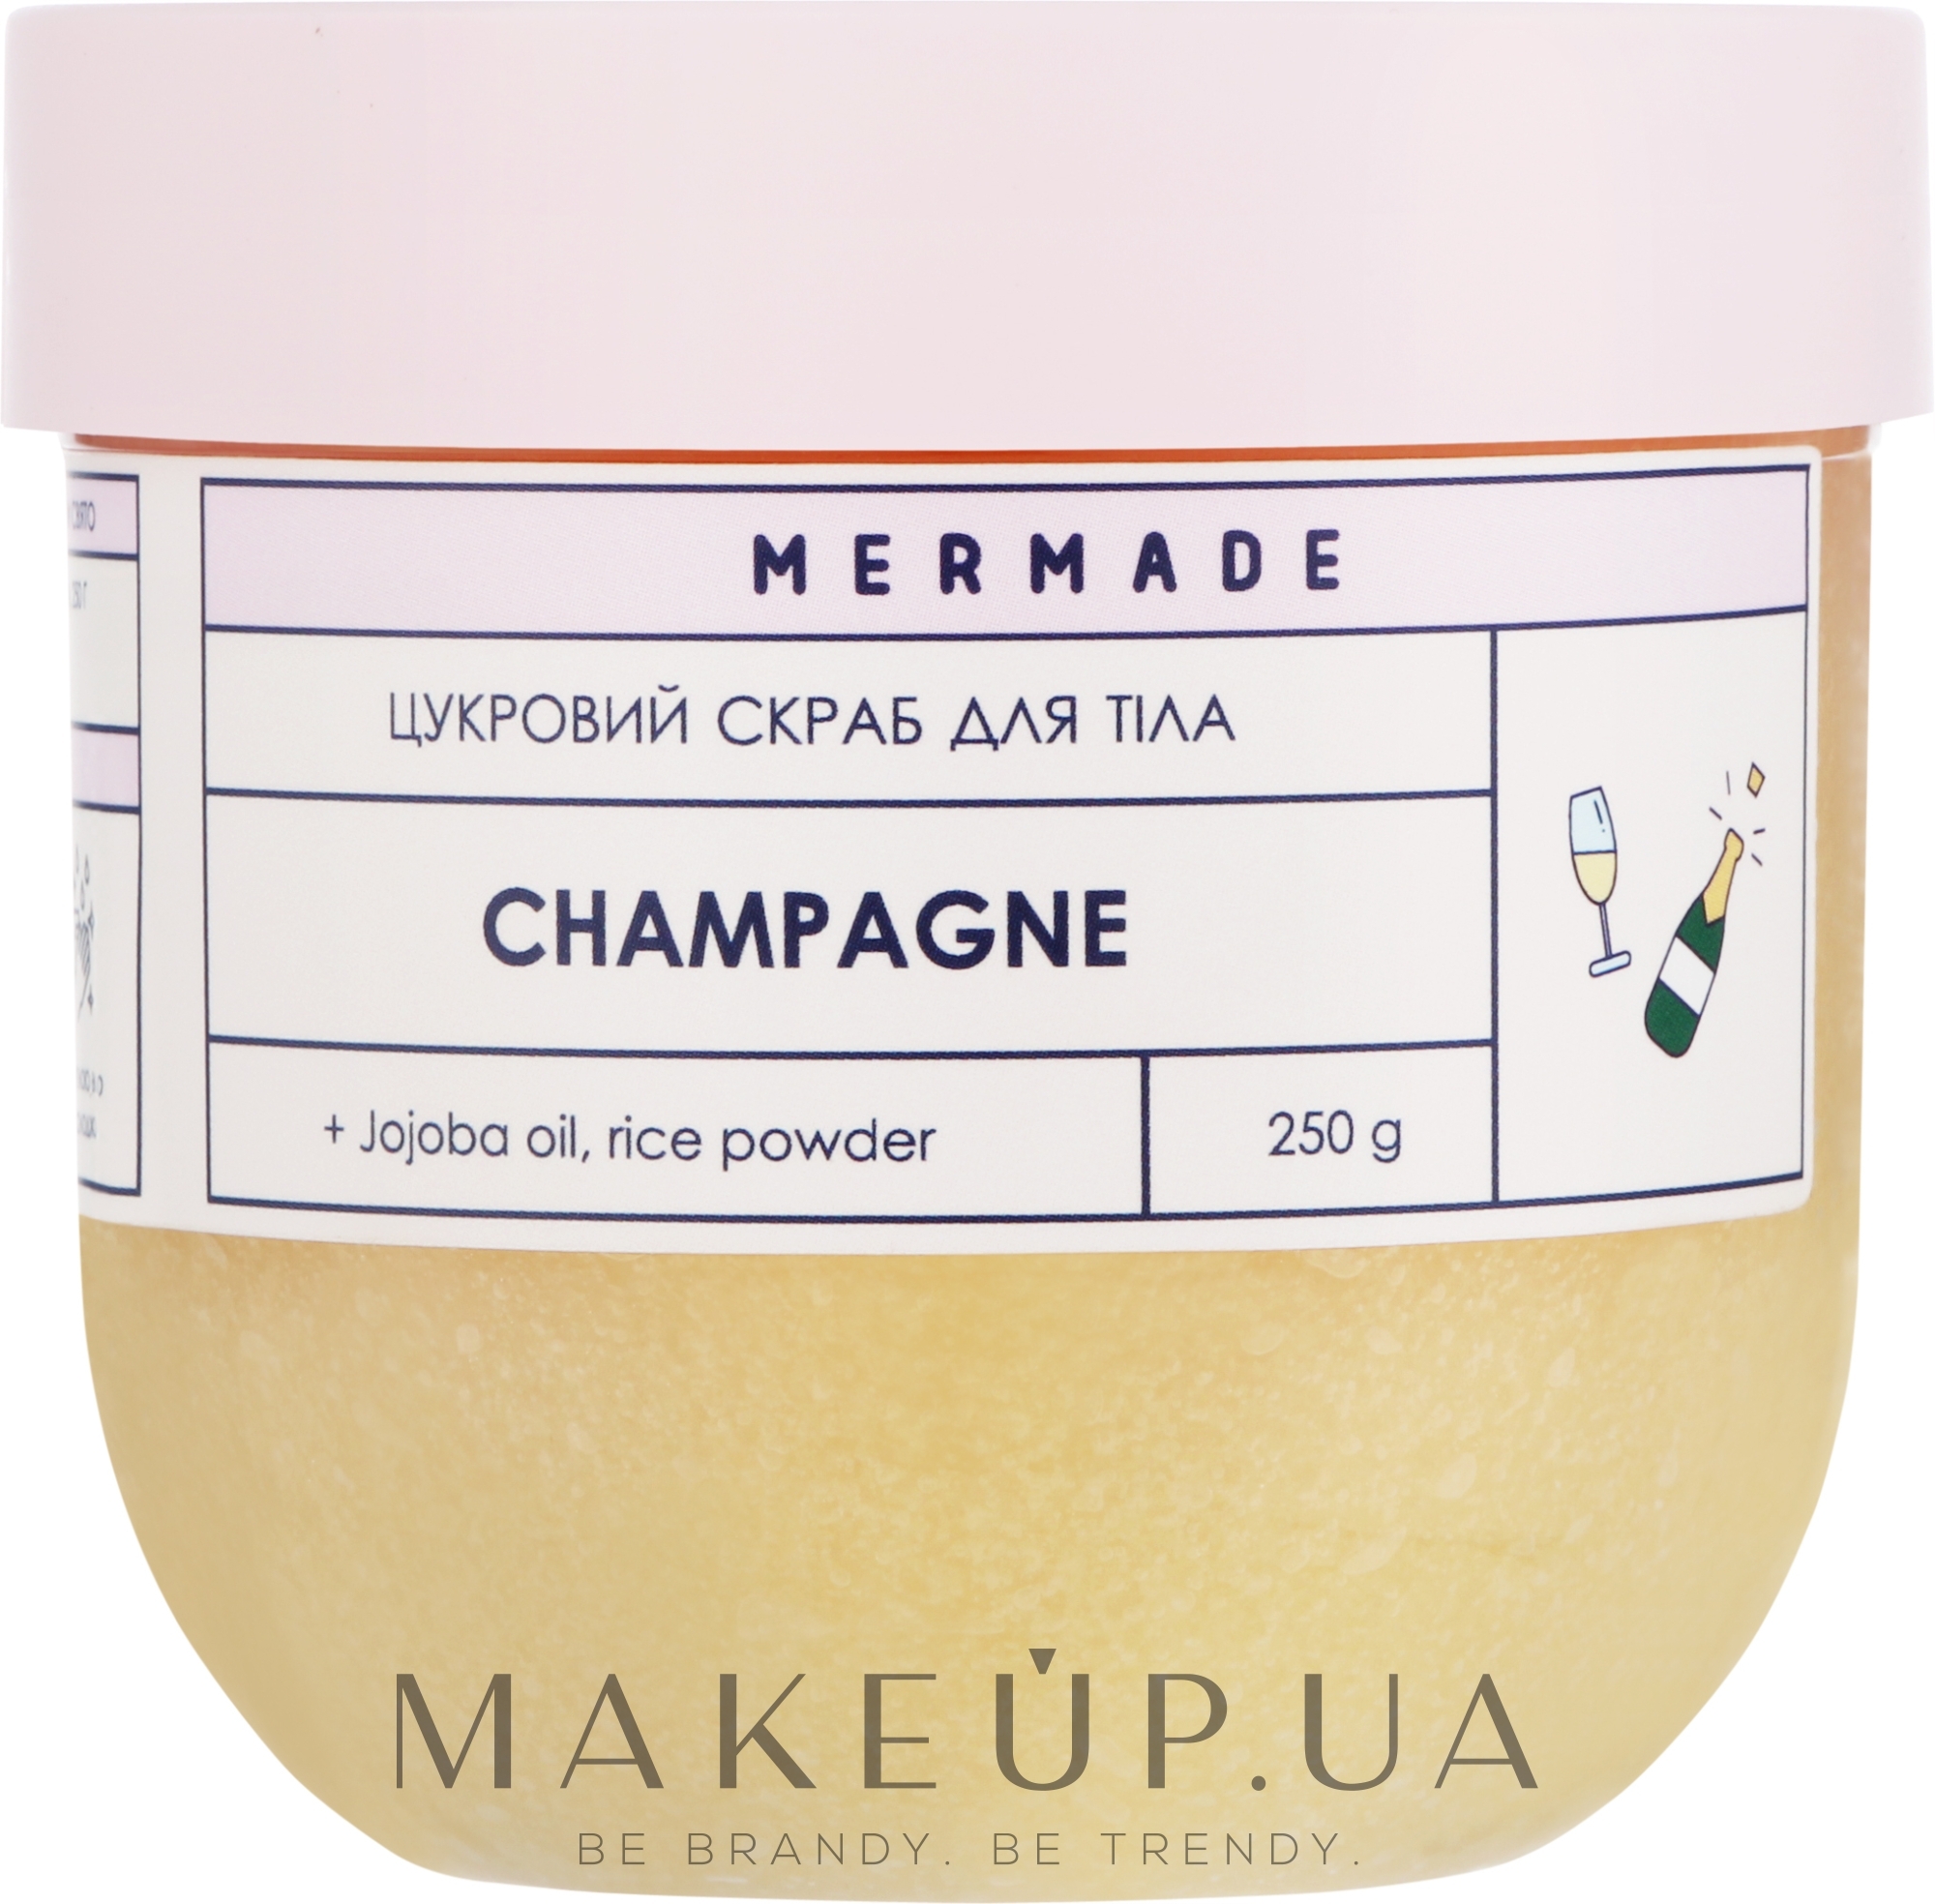 Цукровий скраб для тіла - Mermade Champagne — фото 250g